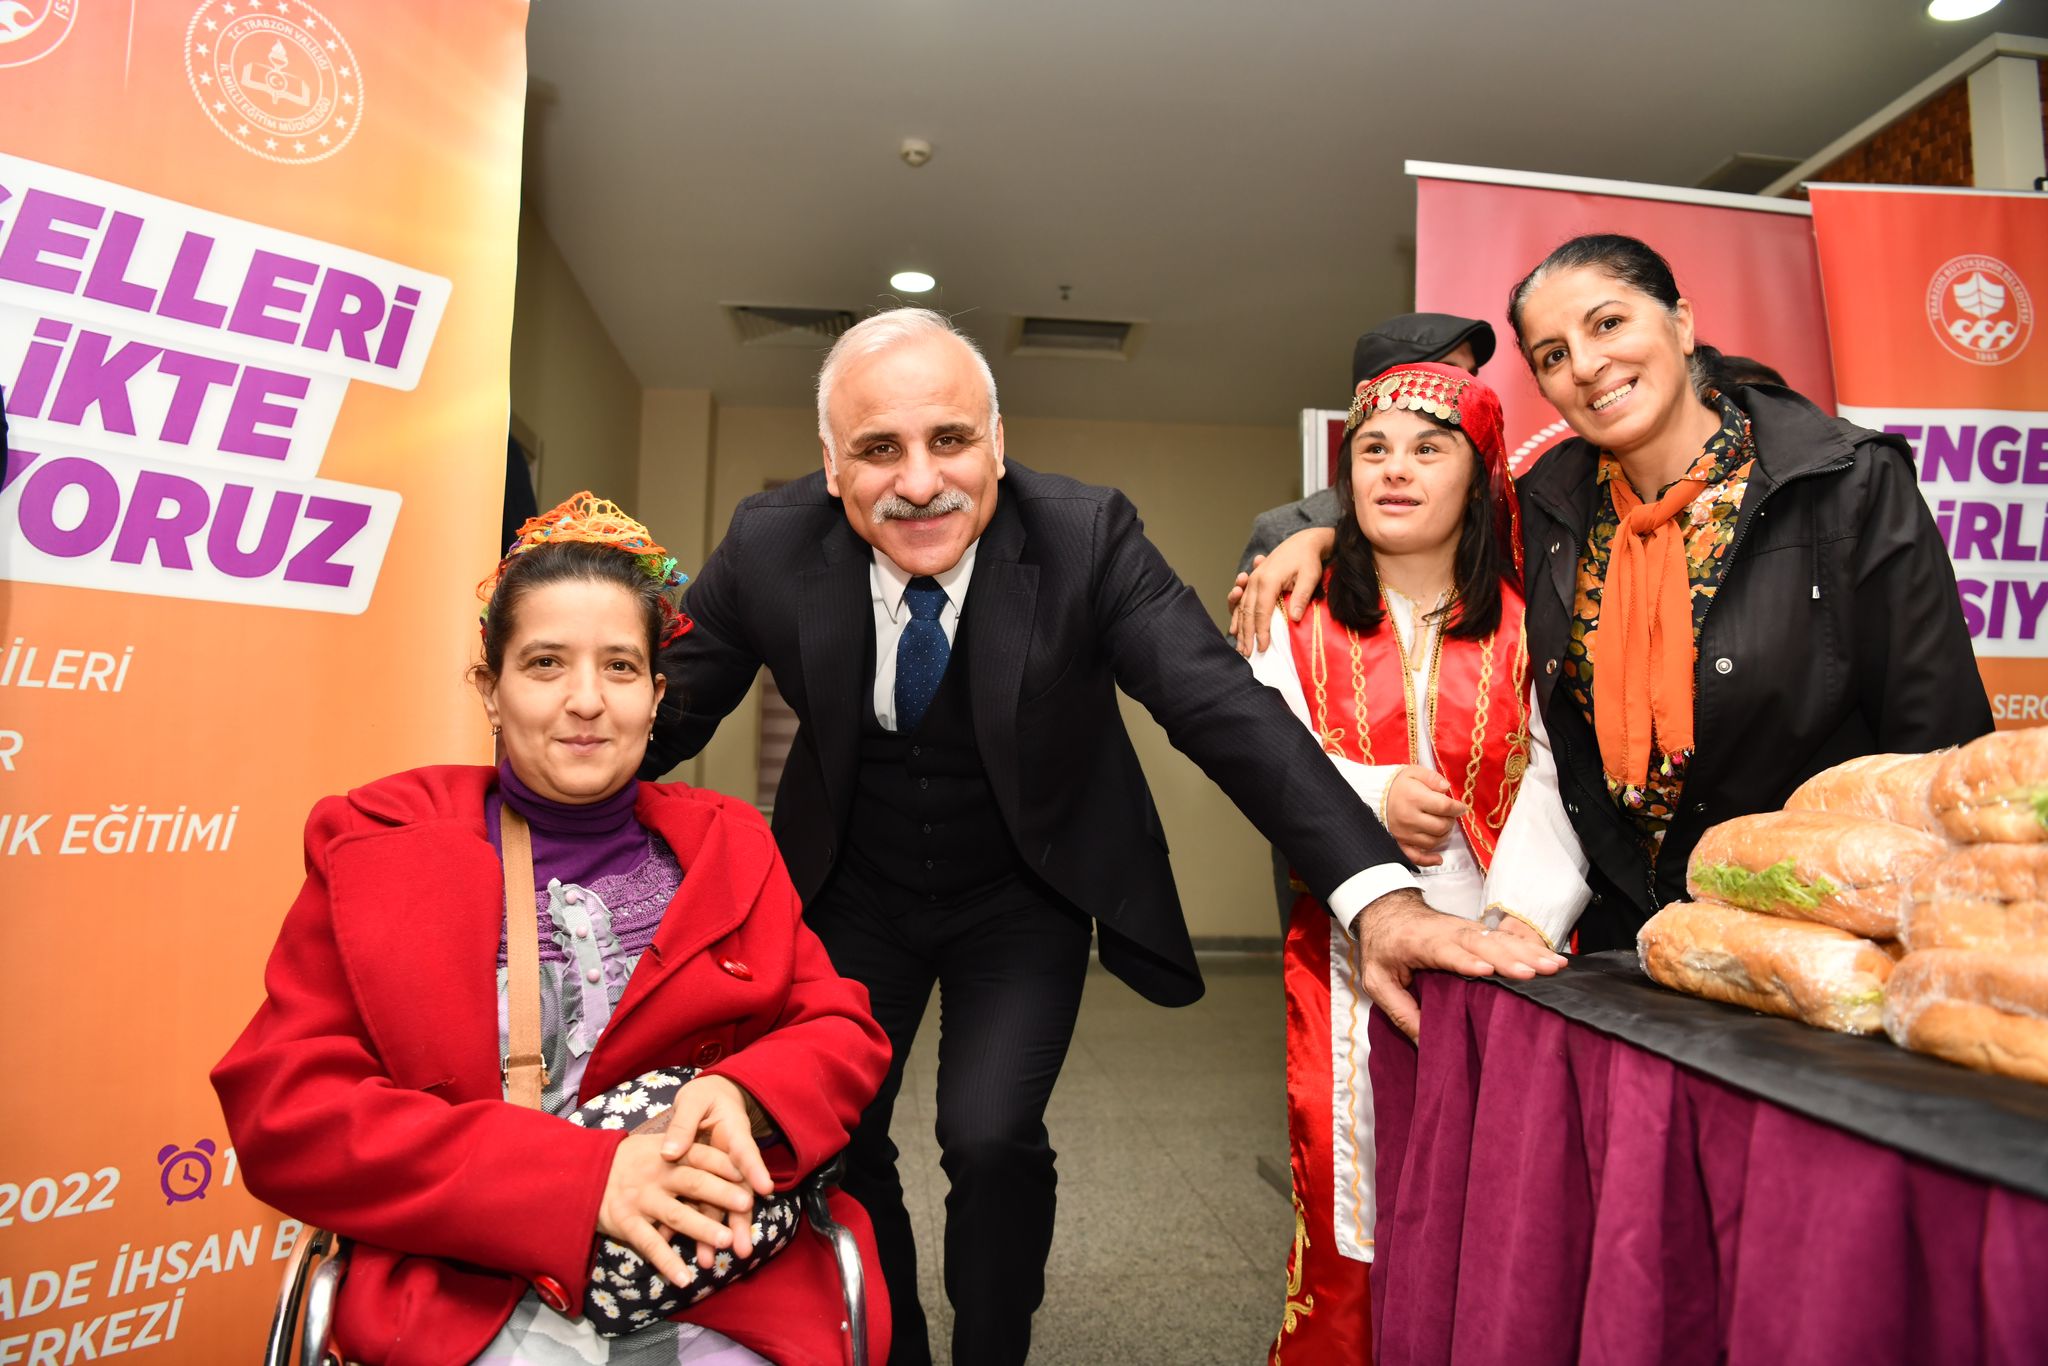 Trabzon'da "Engelleri Birlikte Aşıyoruz" programına yoğun ilgi